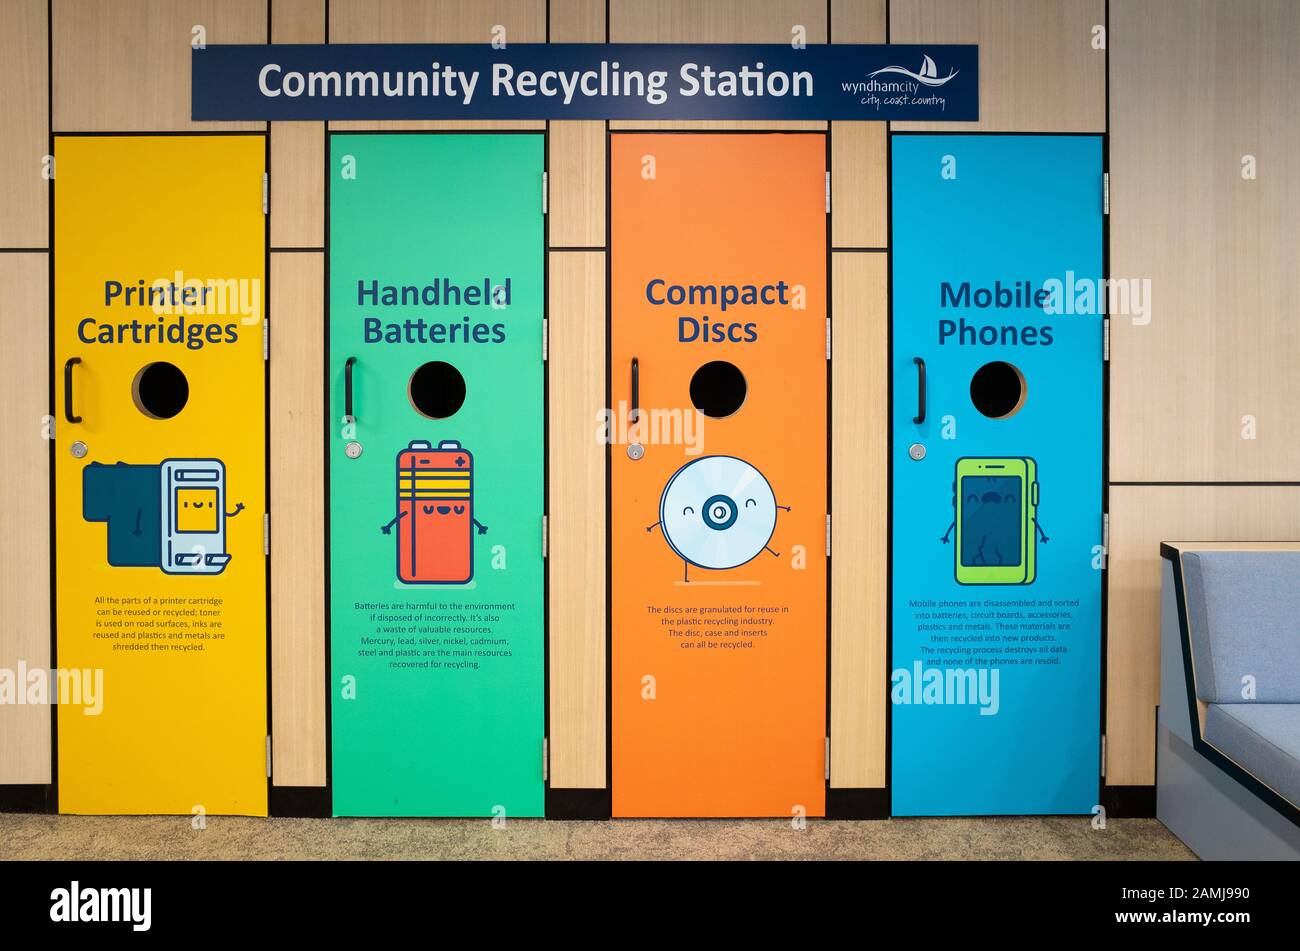 Des bacs communautaires de recyclage de quelques petits e-déchets, y compris les téléphones mobiles et les disques compacts dans une banlieue. Melbourne. VIC Australie Banque D'Images